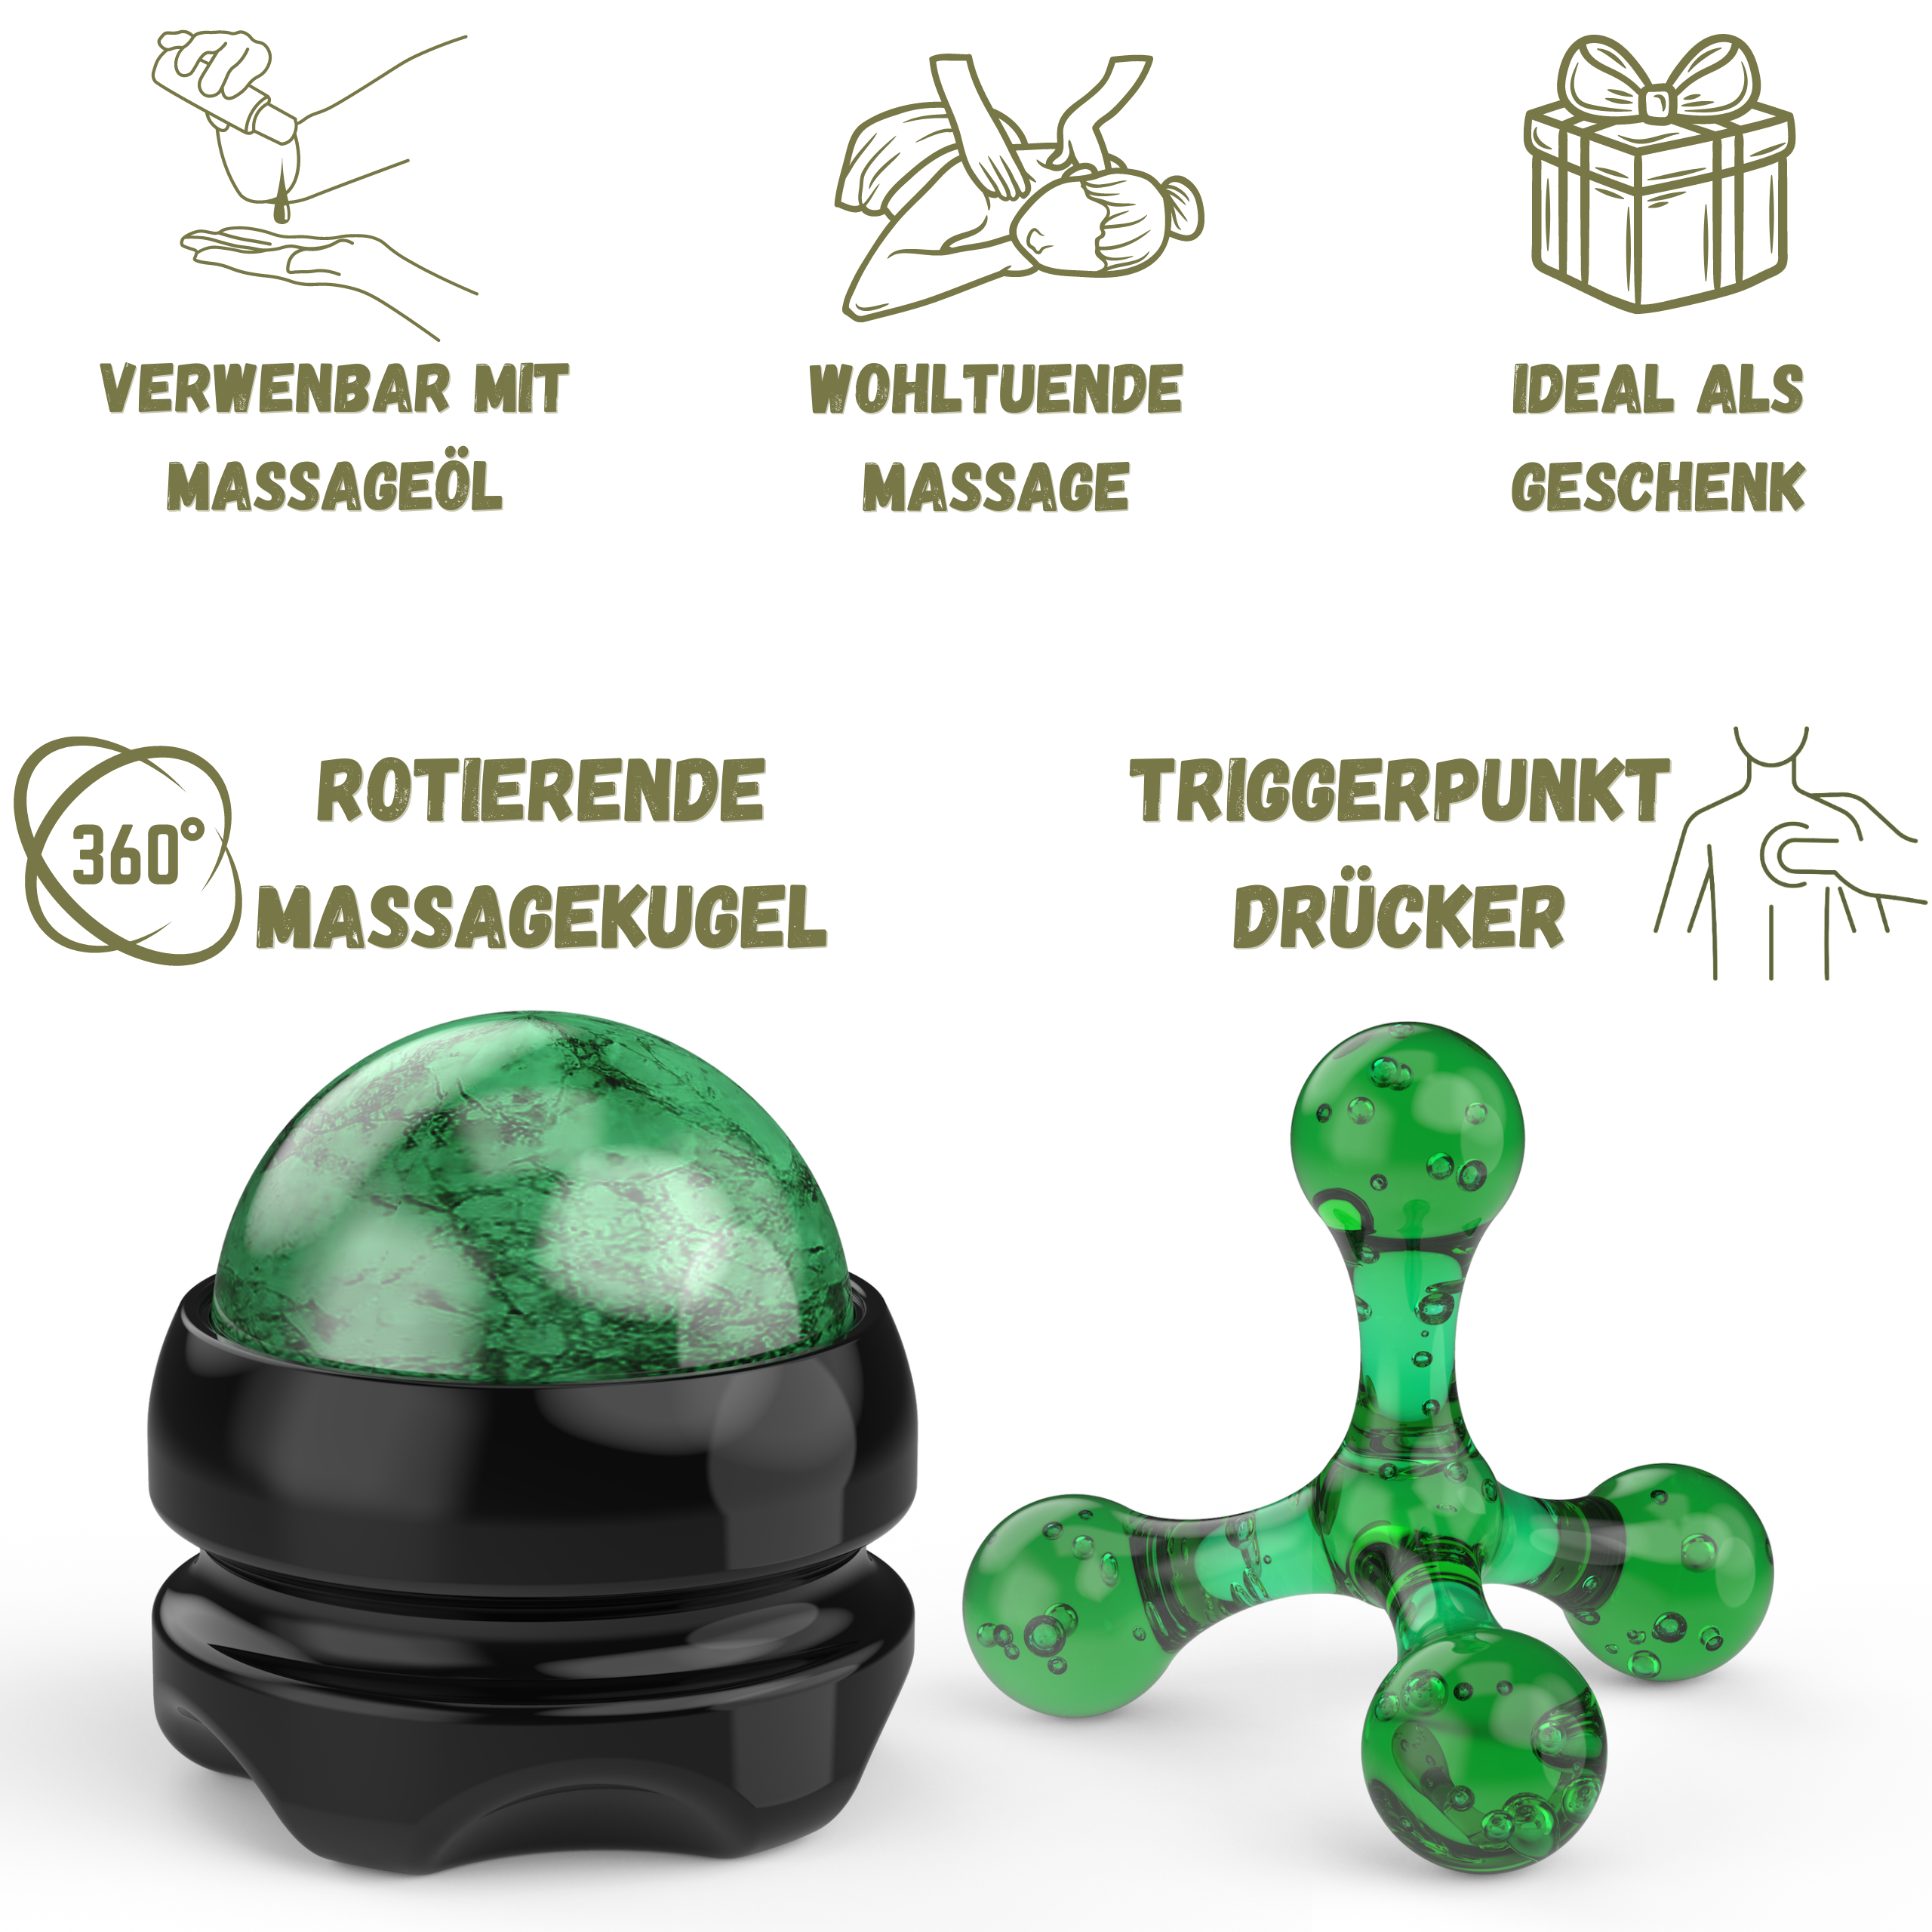 Grüner Massageball und grüner Triggerpunkt Drücker, ideal für wohltuende Massage, Verwendung mit Massageöl, perfekt als Geschenk.